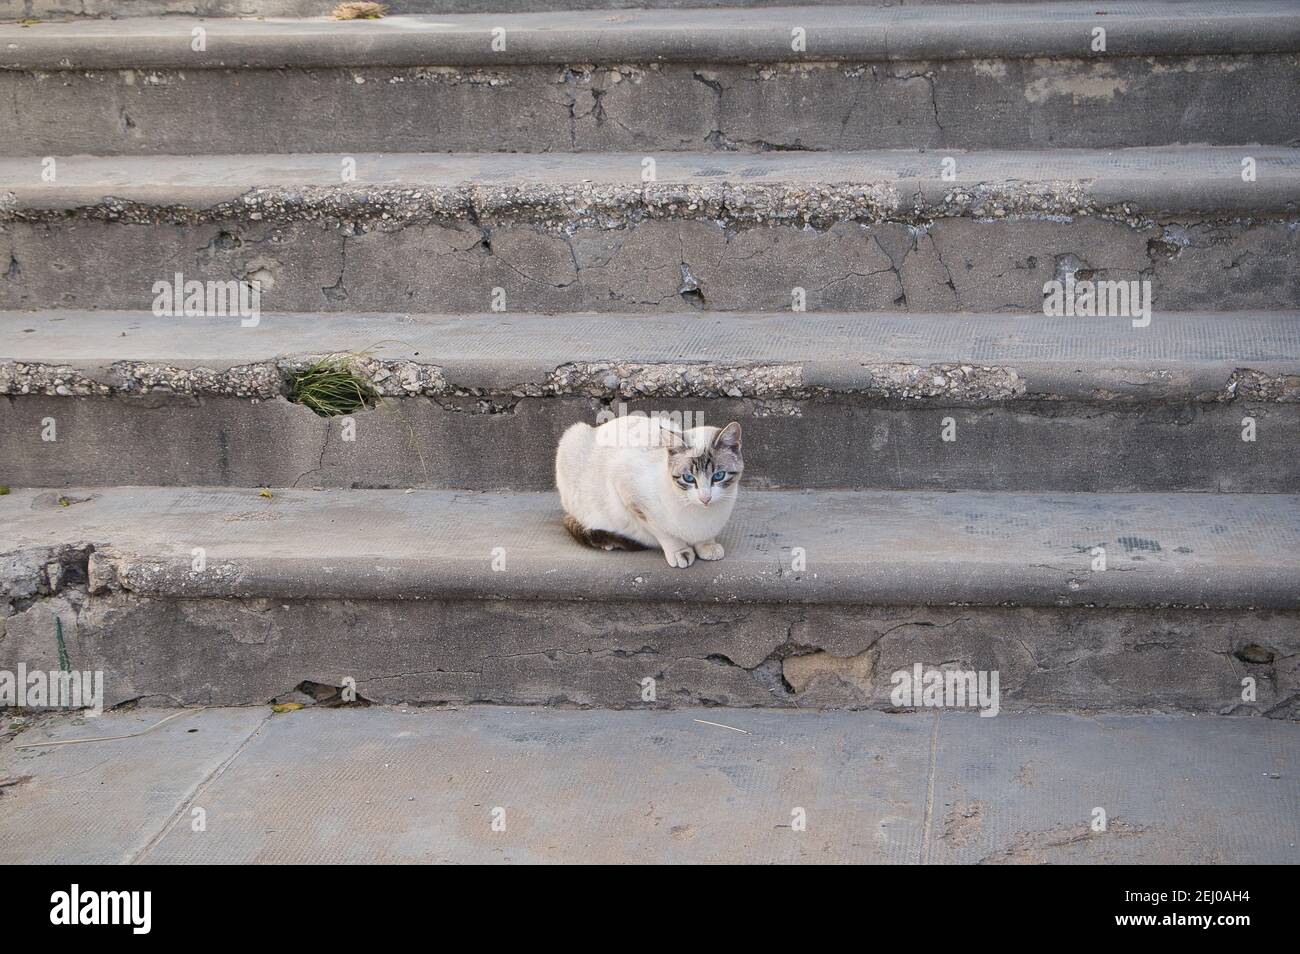 gatti randagi sulle scale nella strada vari gatti Foto Stock